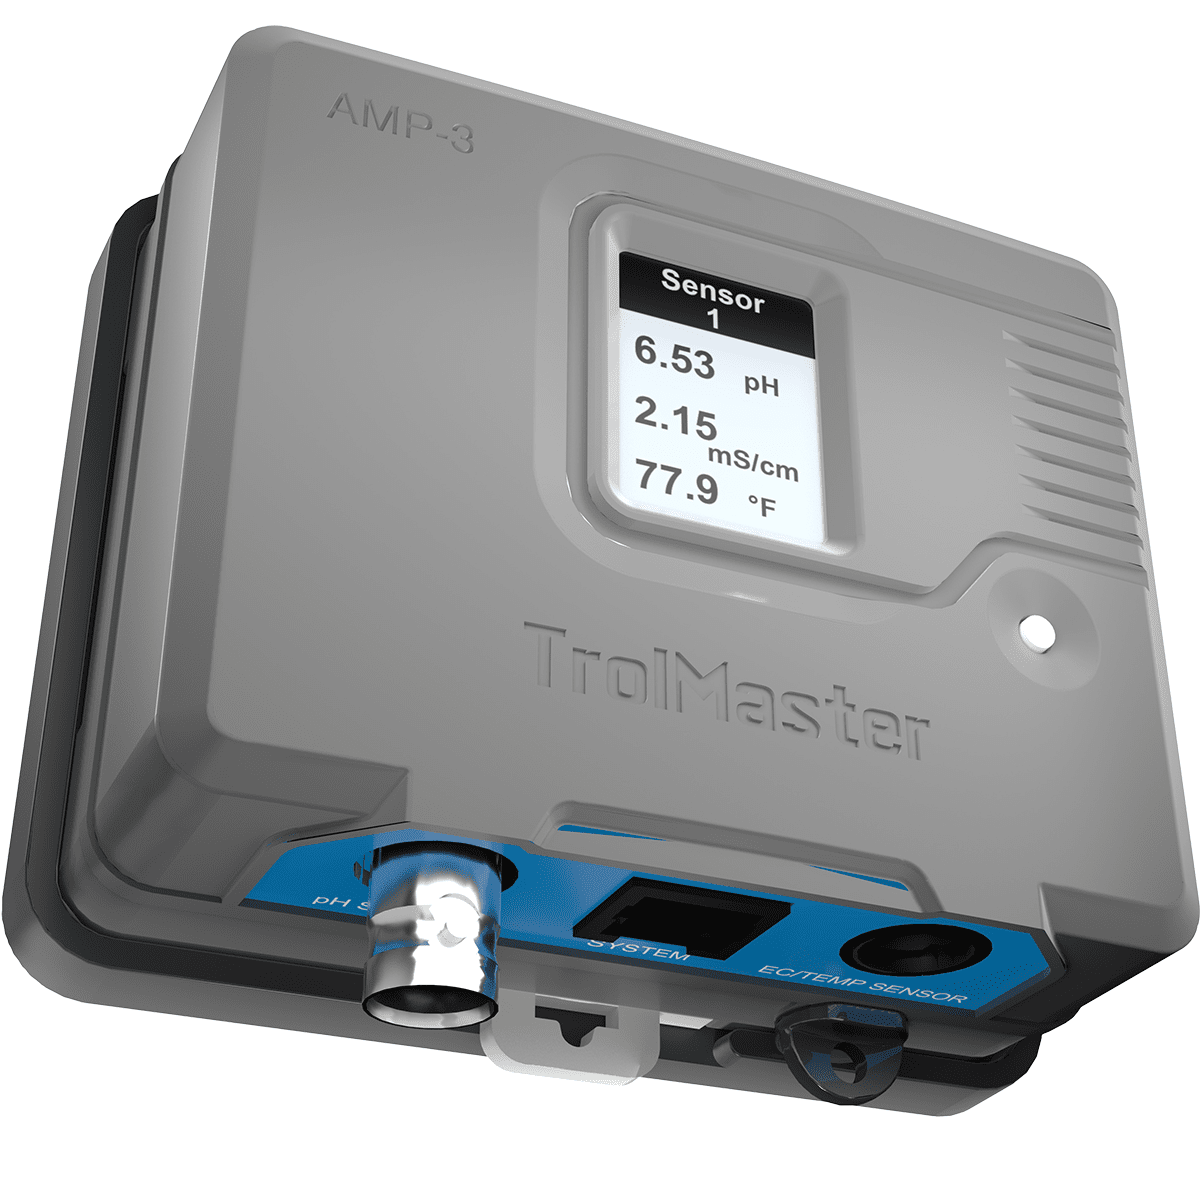 Trolmaster Aqua-X Pro Sensor Board - For Aqua-X Pro